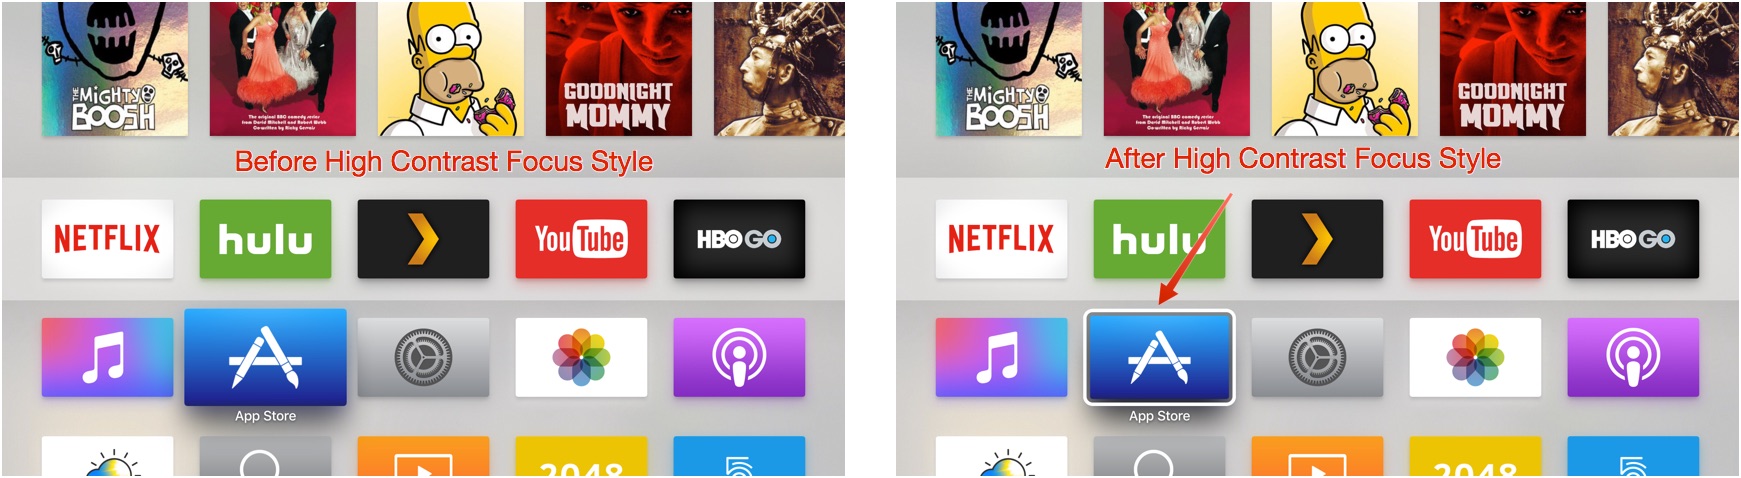 Сравнение высококонтрастного стиля фокусировки на Apple TV